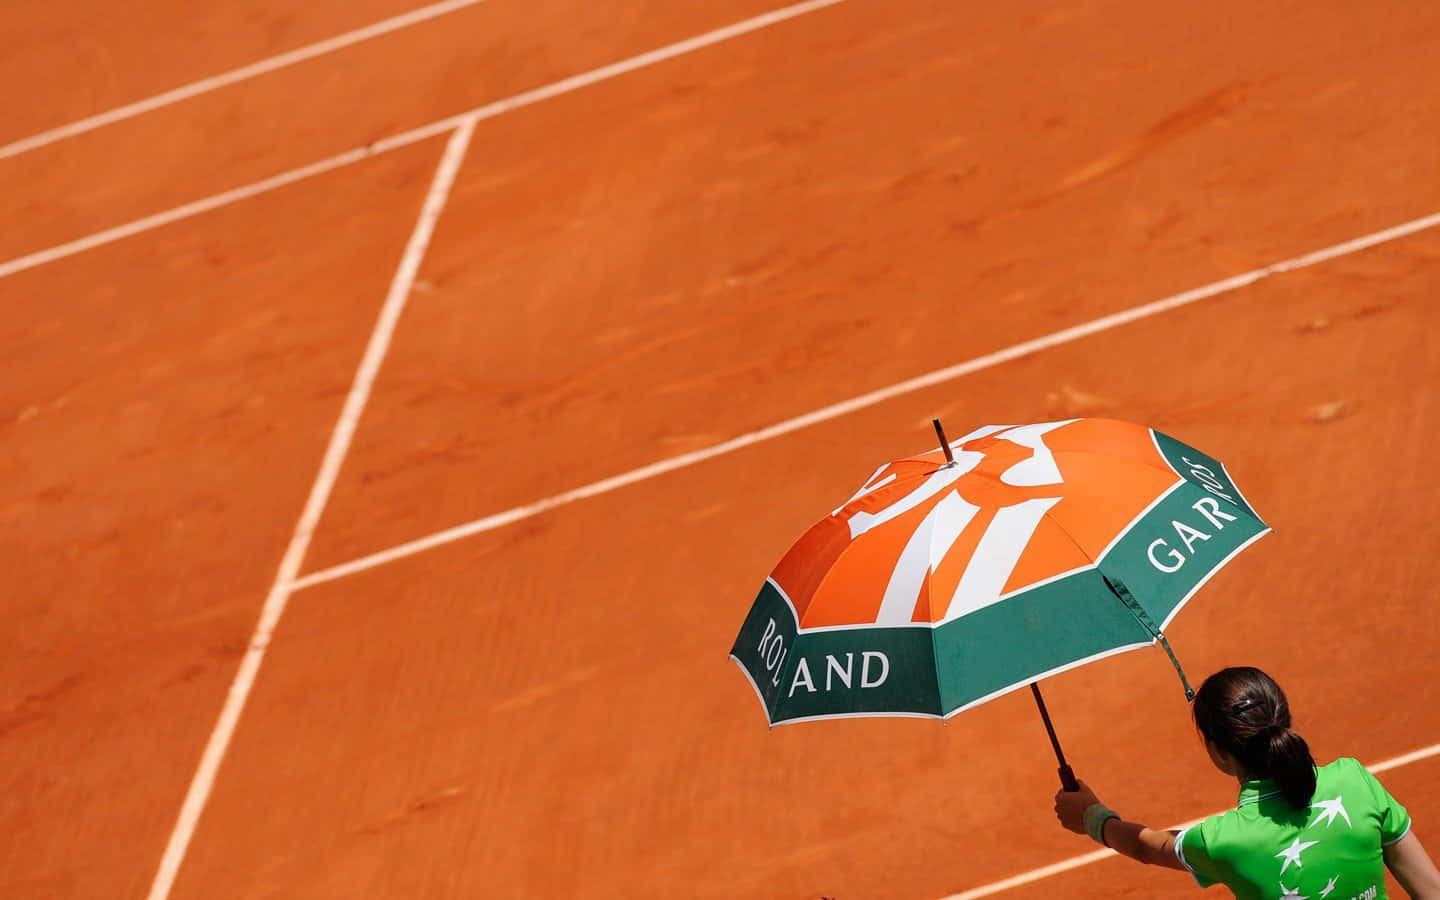 A Woman Holding An Umbrella On A Tennis Court